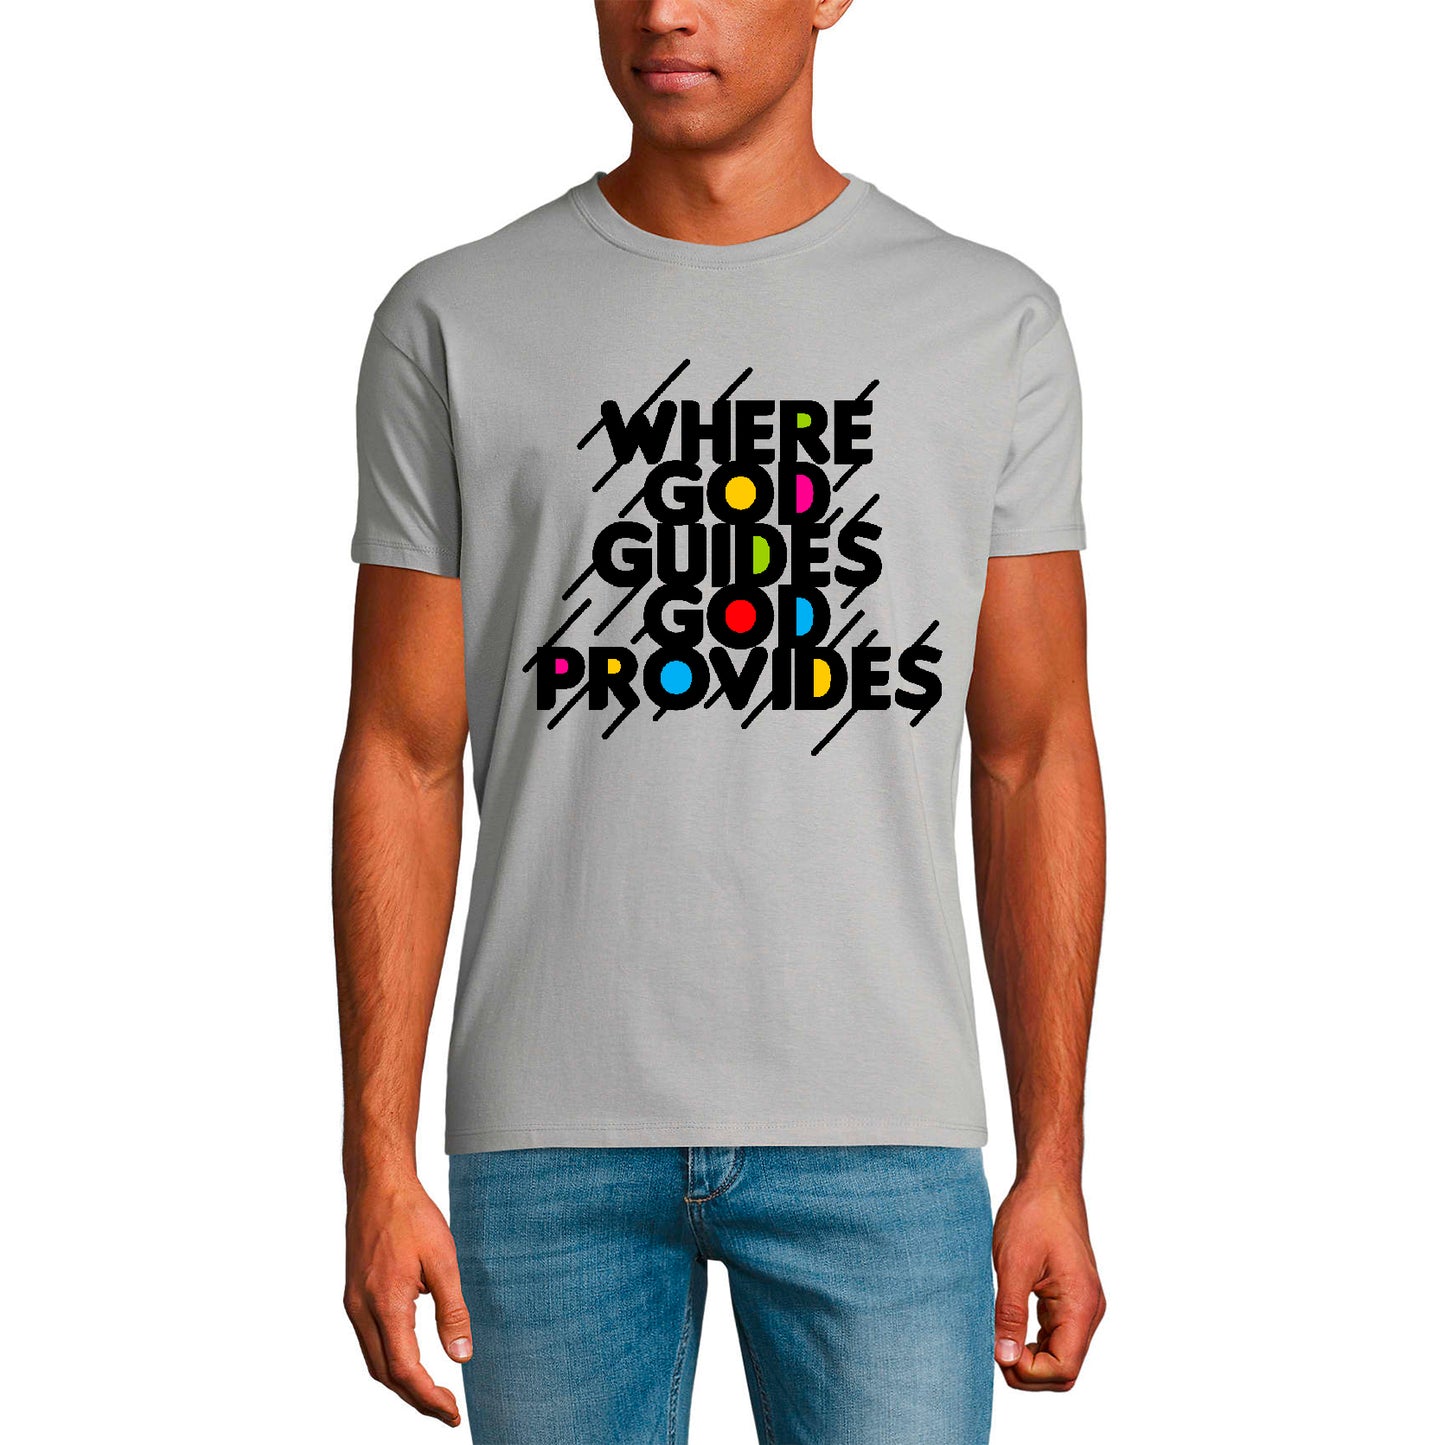 T-shirt ULTRABASIC pour hommes, Dieu guide Dieu fournit - Chemise religieuse biblique